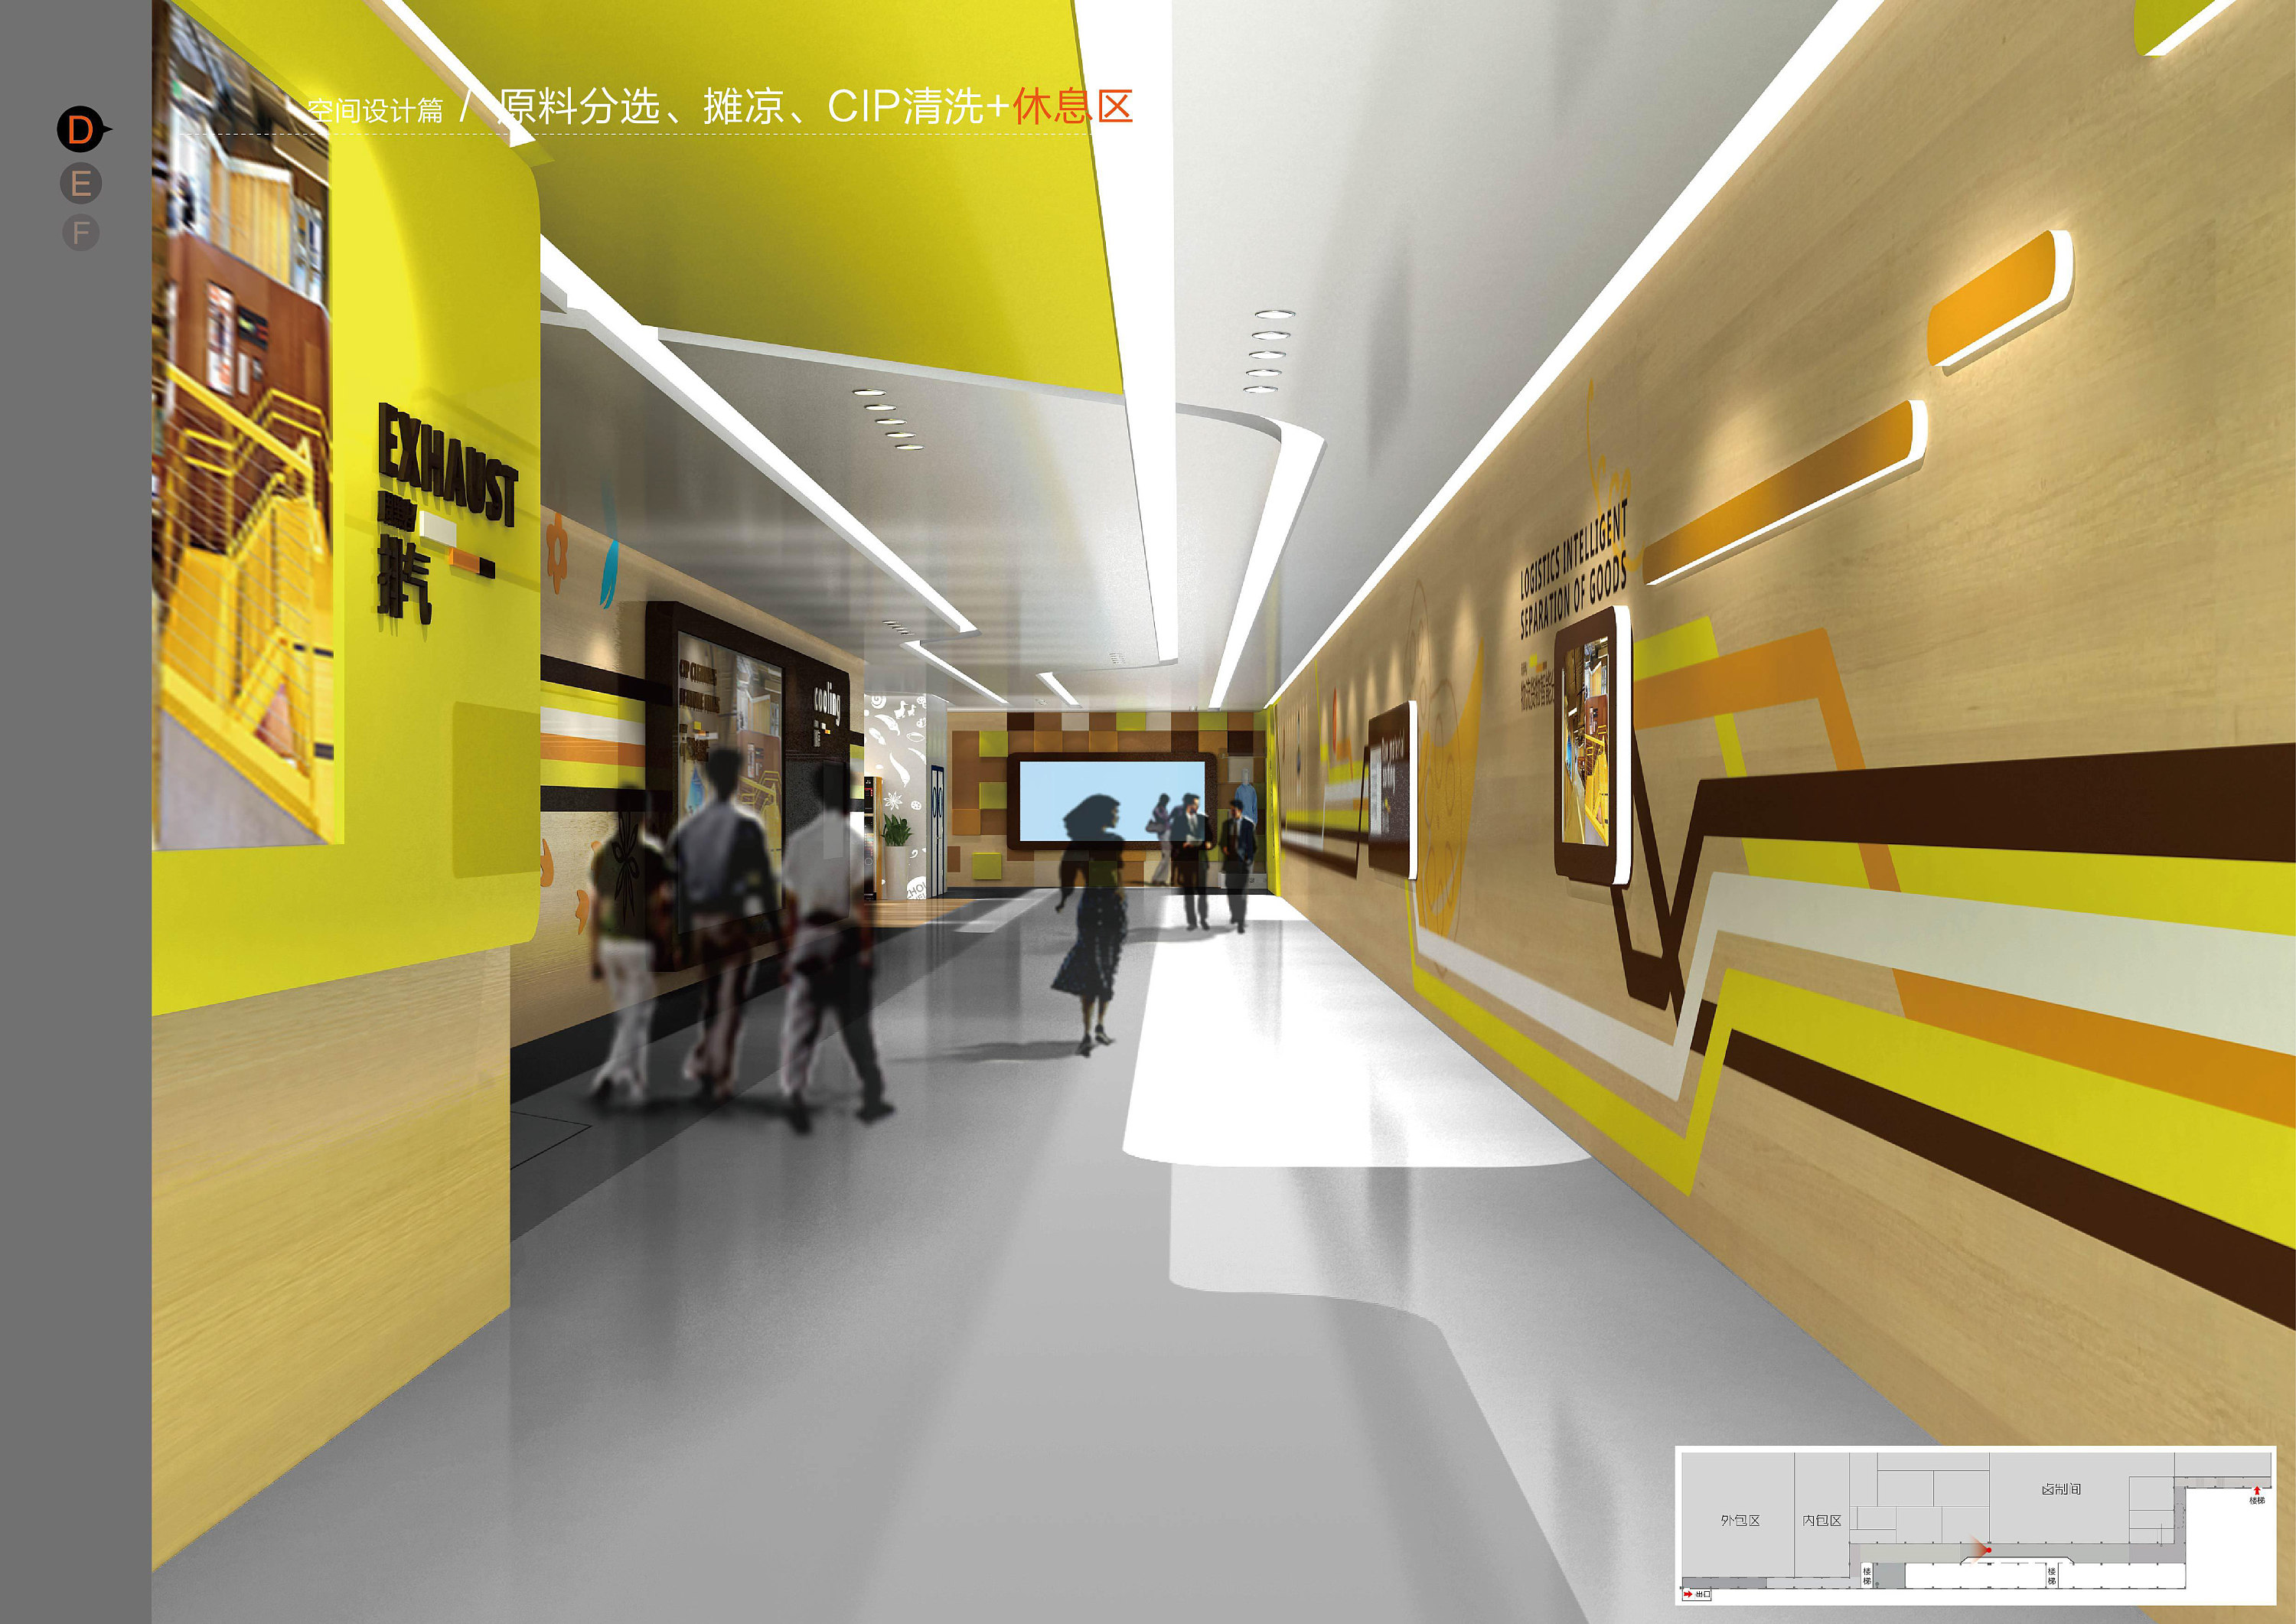 现代办公室走廊模型+免费3D模型下载+免费SU模型下载+炫云云模型网站